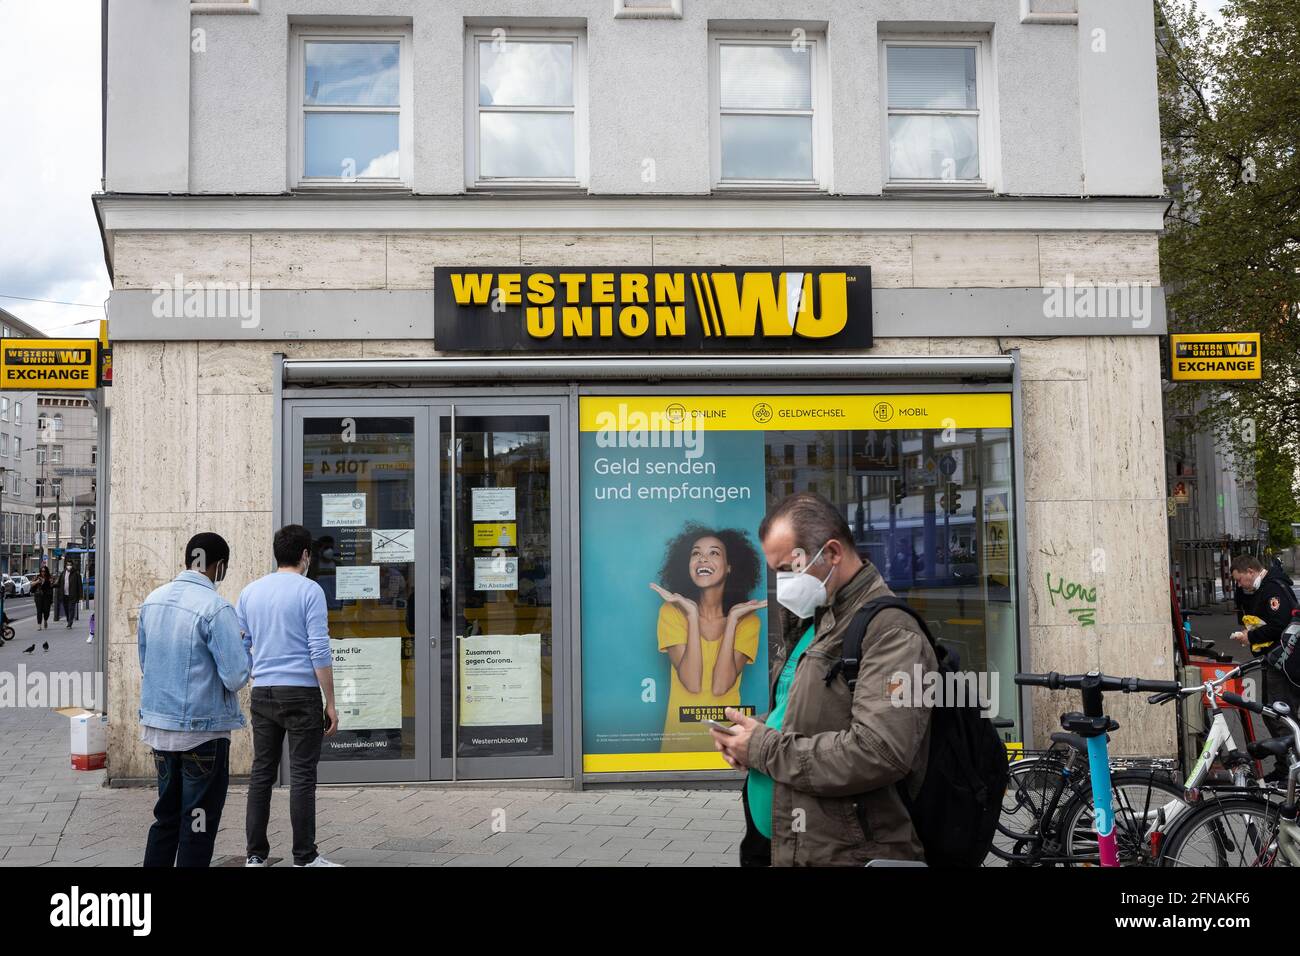 Western Union Building Shop Stockfotos und -bilder Kaufen - Alamy